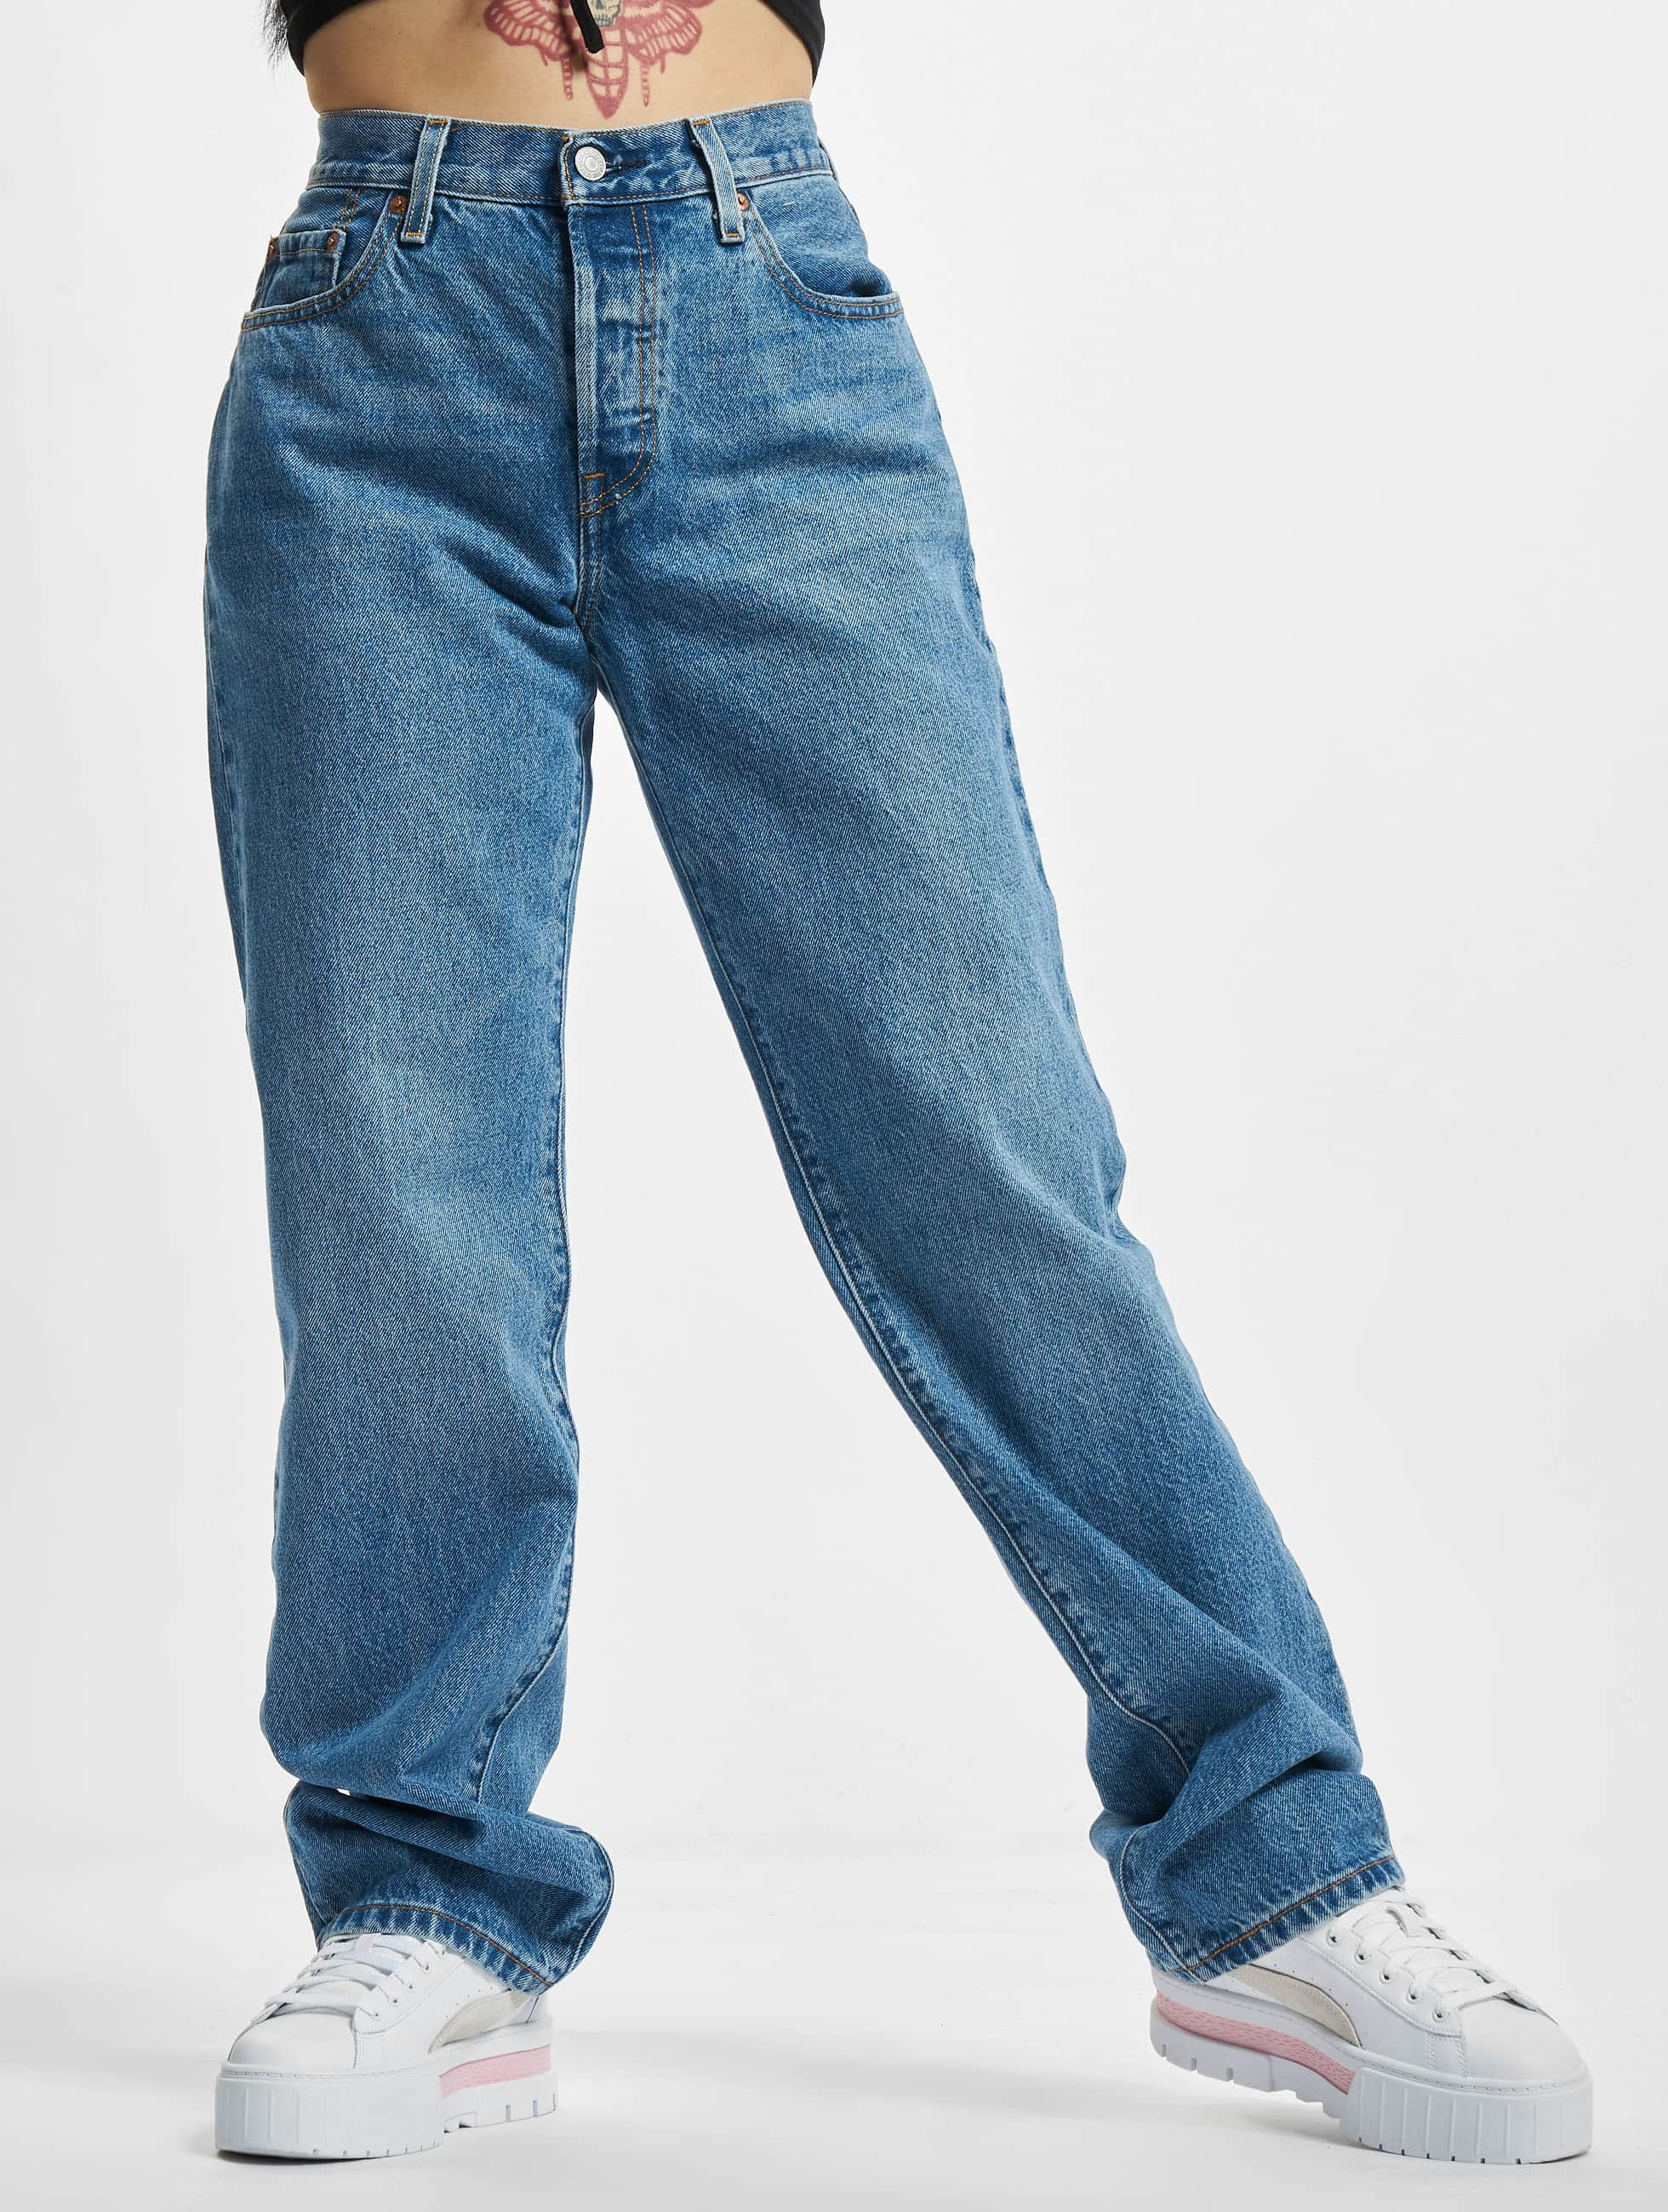 Lav aftensmad dybtgående Øst Timor Levi's® Jeans / Straight Fit Jeans 501 '90s i blå 911103